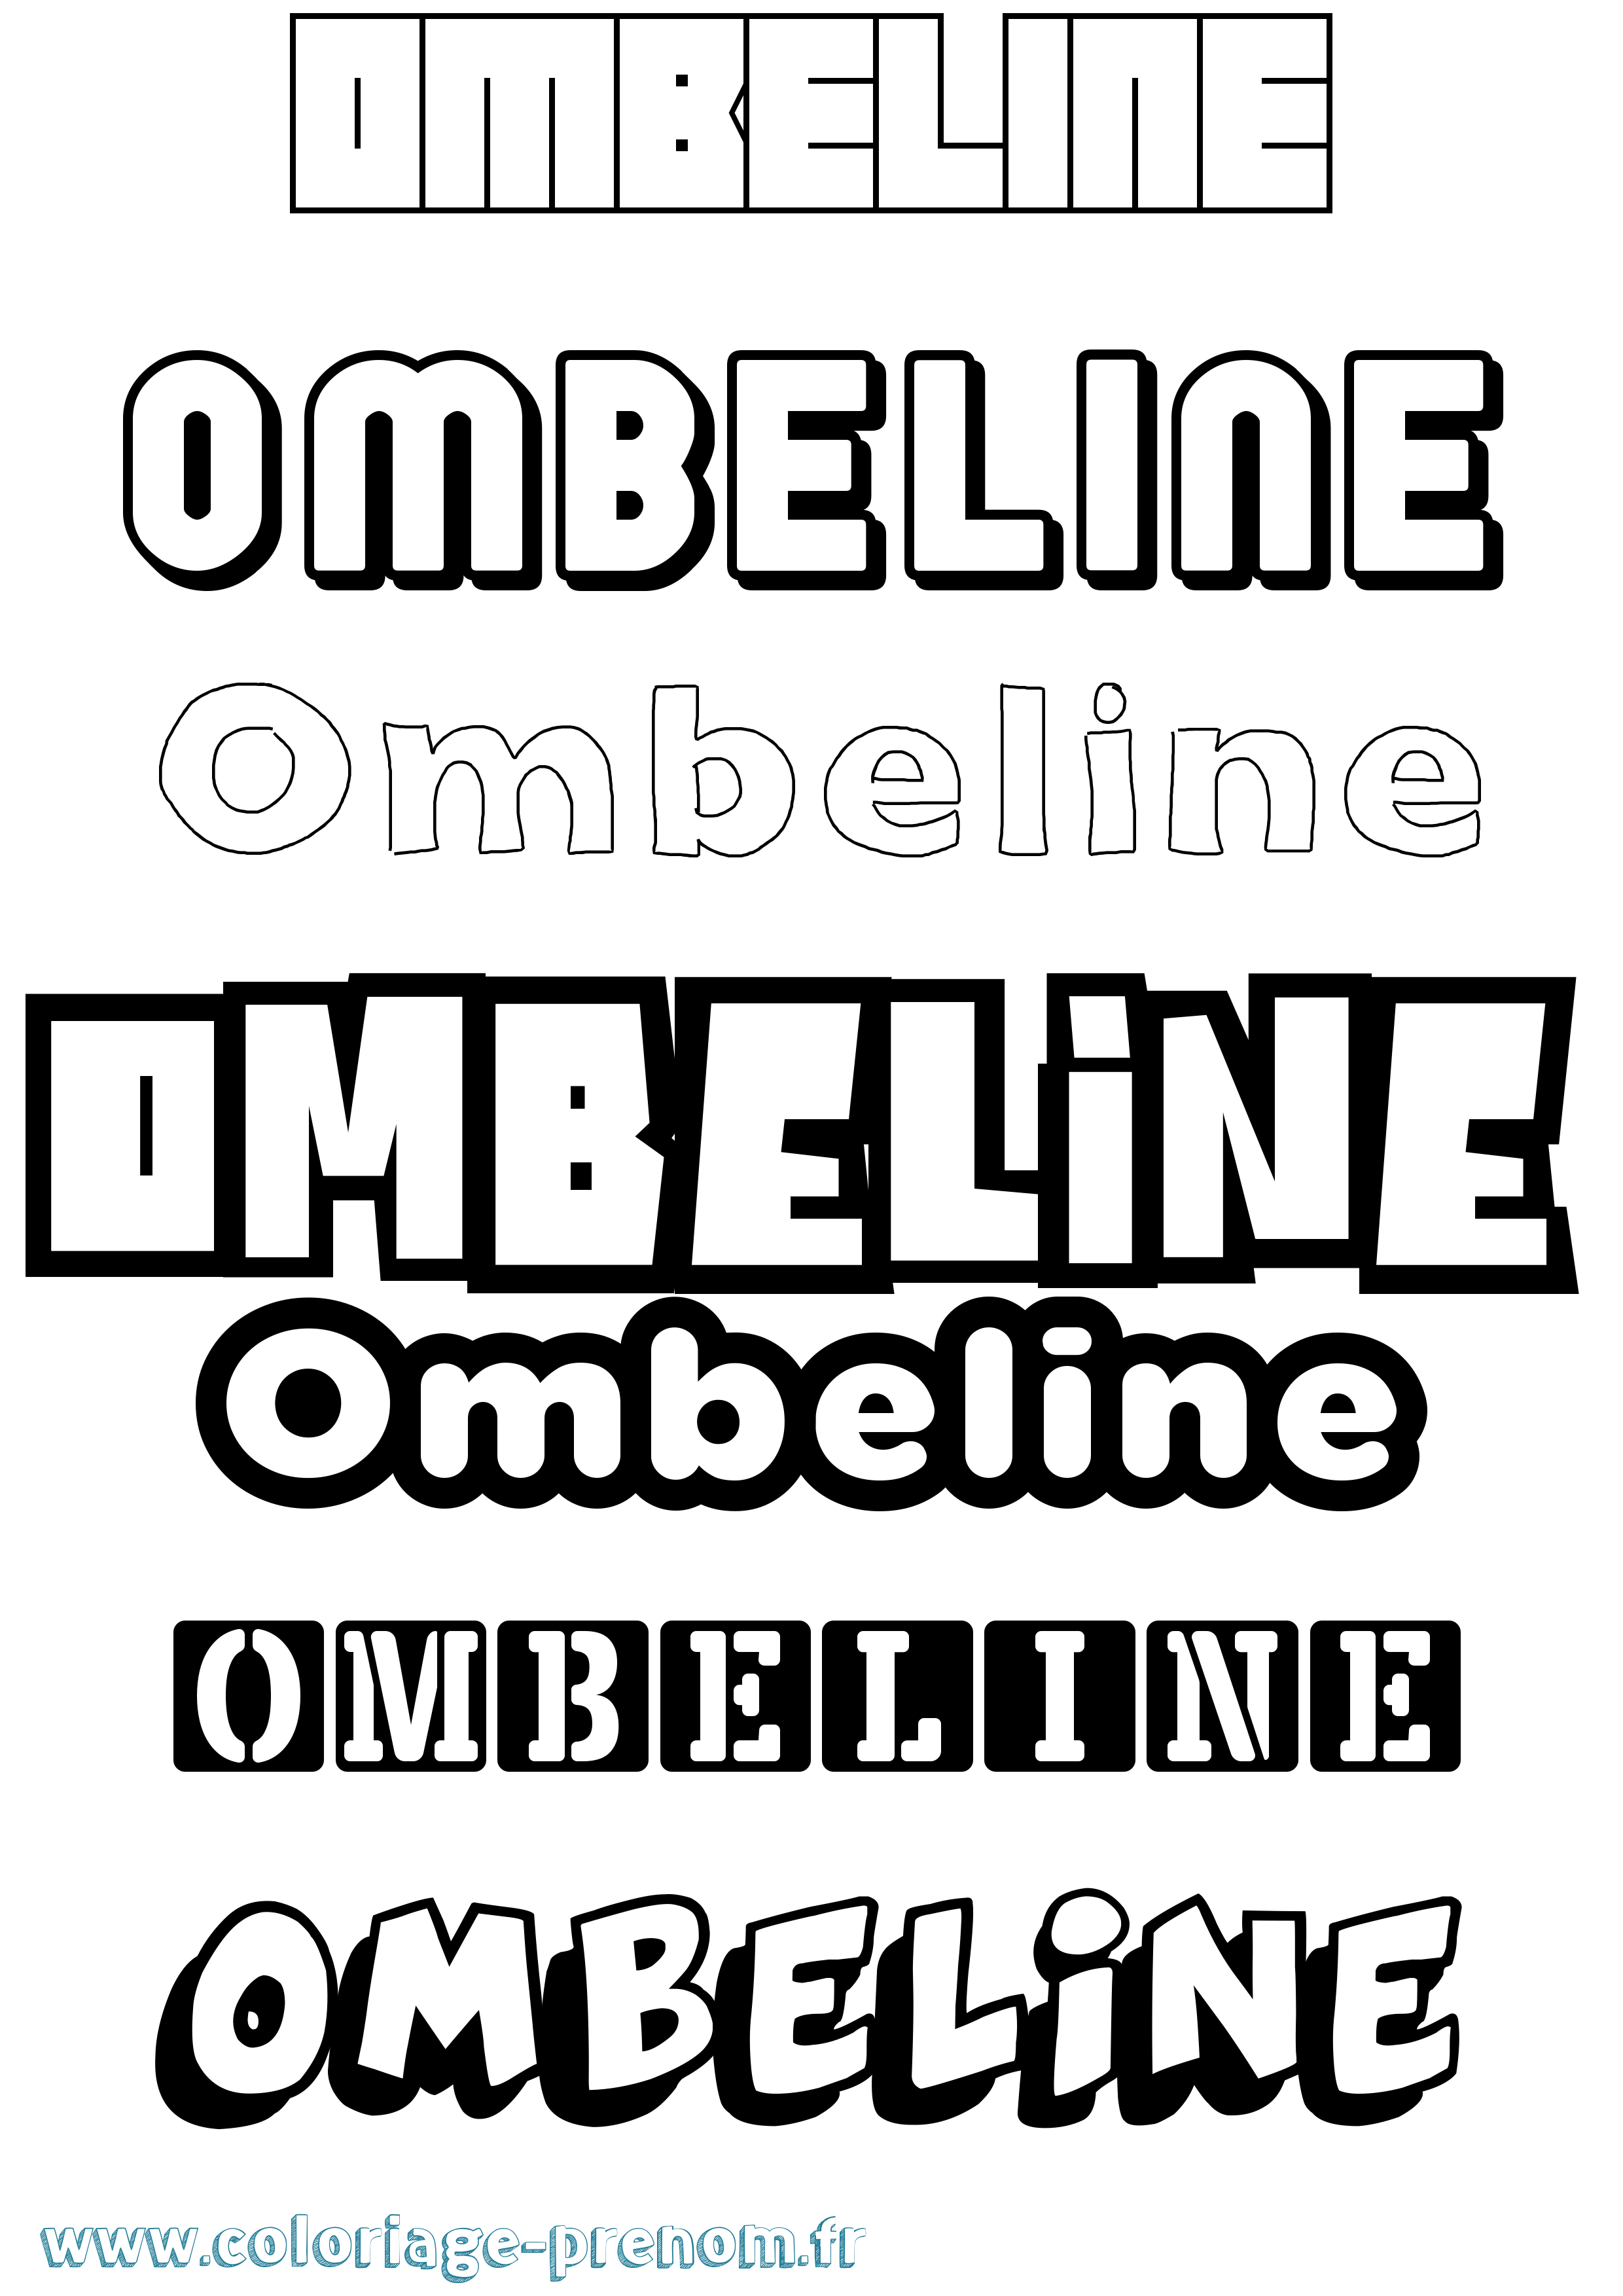 Coloriage prénom Ombeline Simple